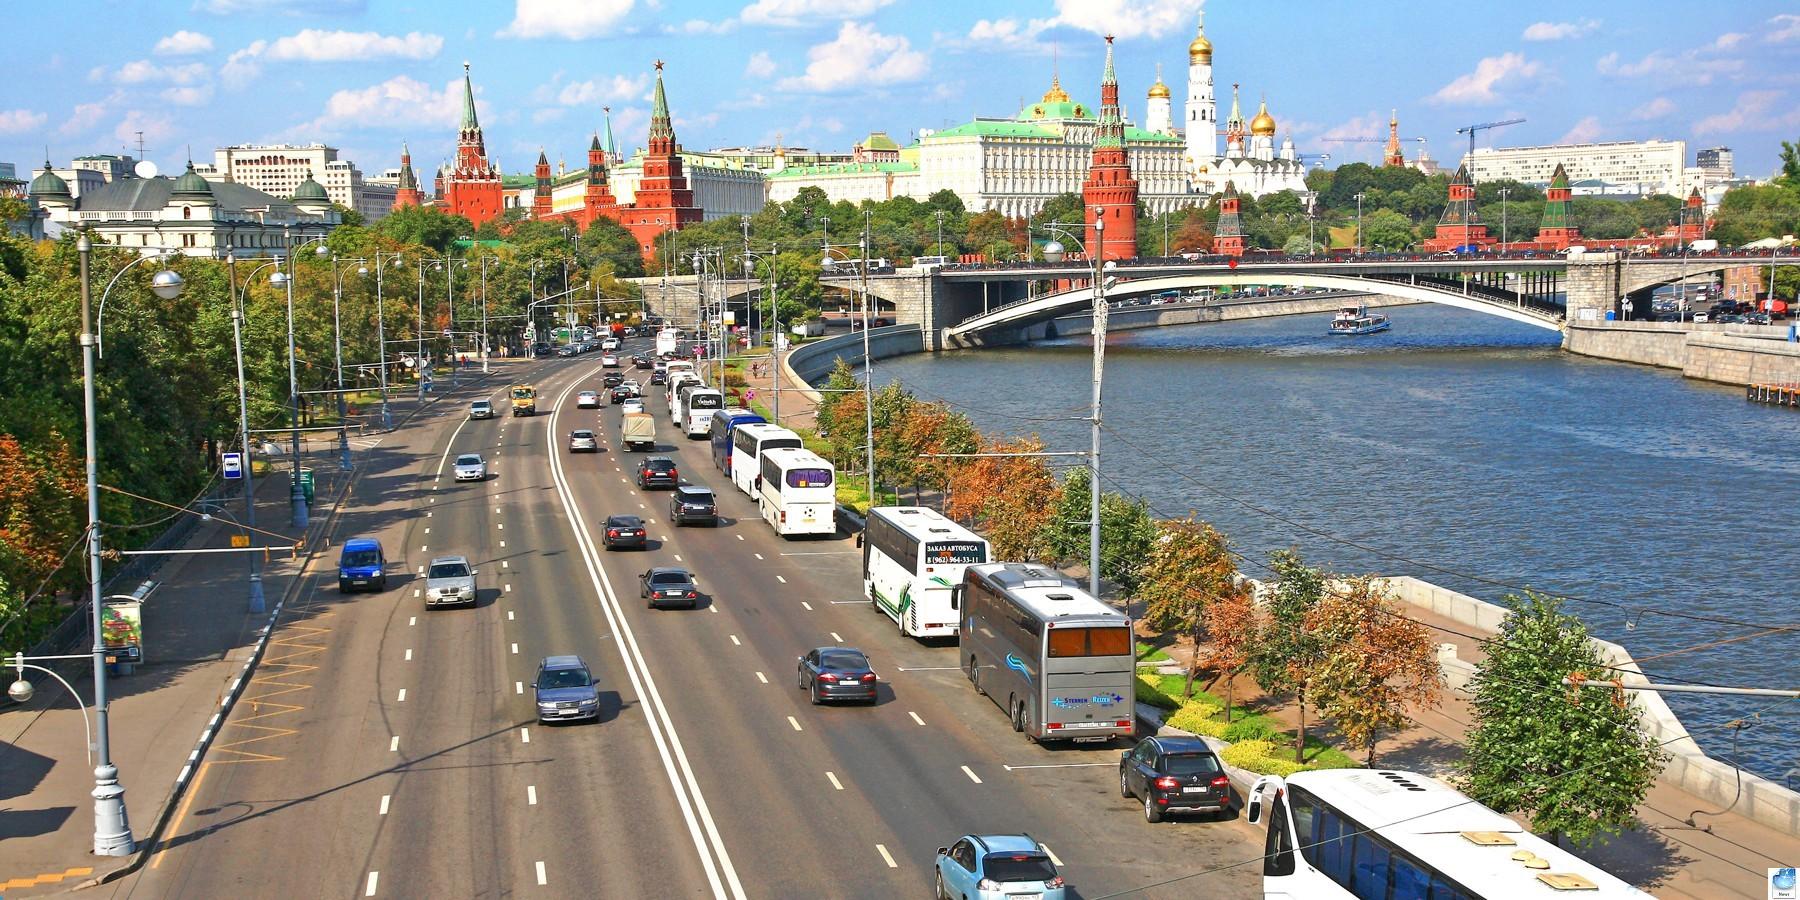 Перекрытие движения 1 по 9 мая 2019 в Москве. Какие улицы будут закрыты во время праздников и репетиций. Ограничение движения